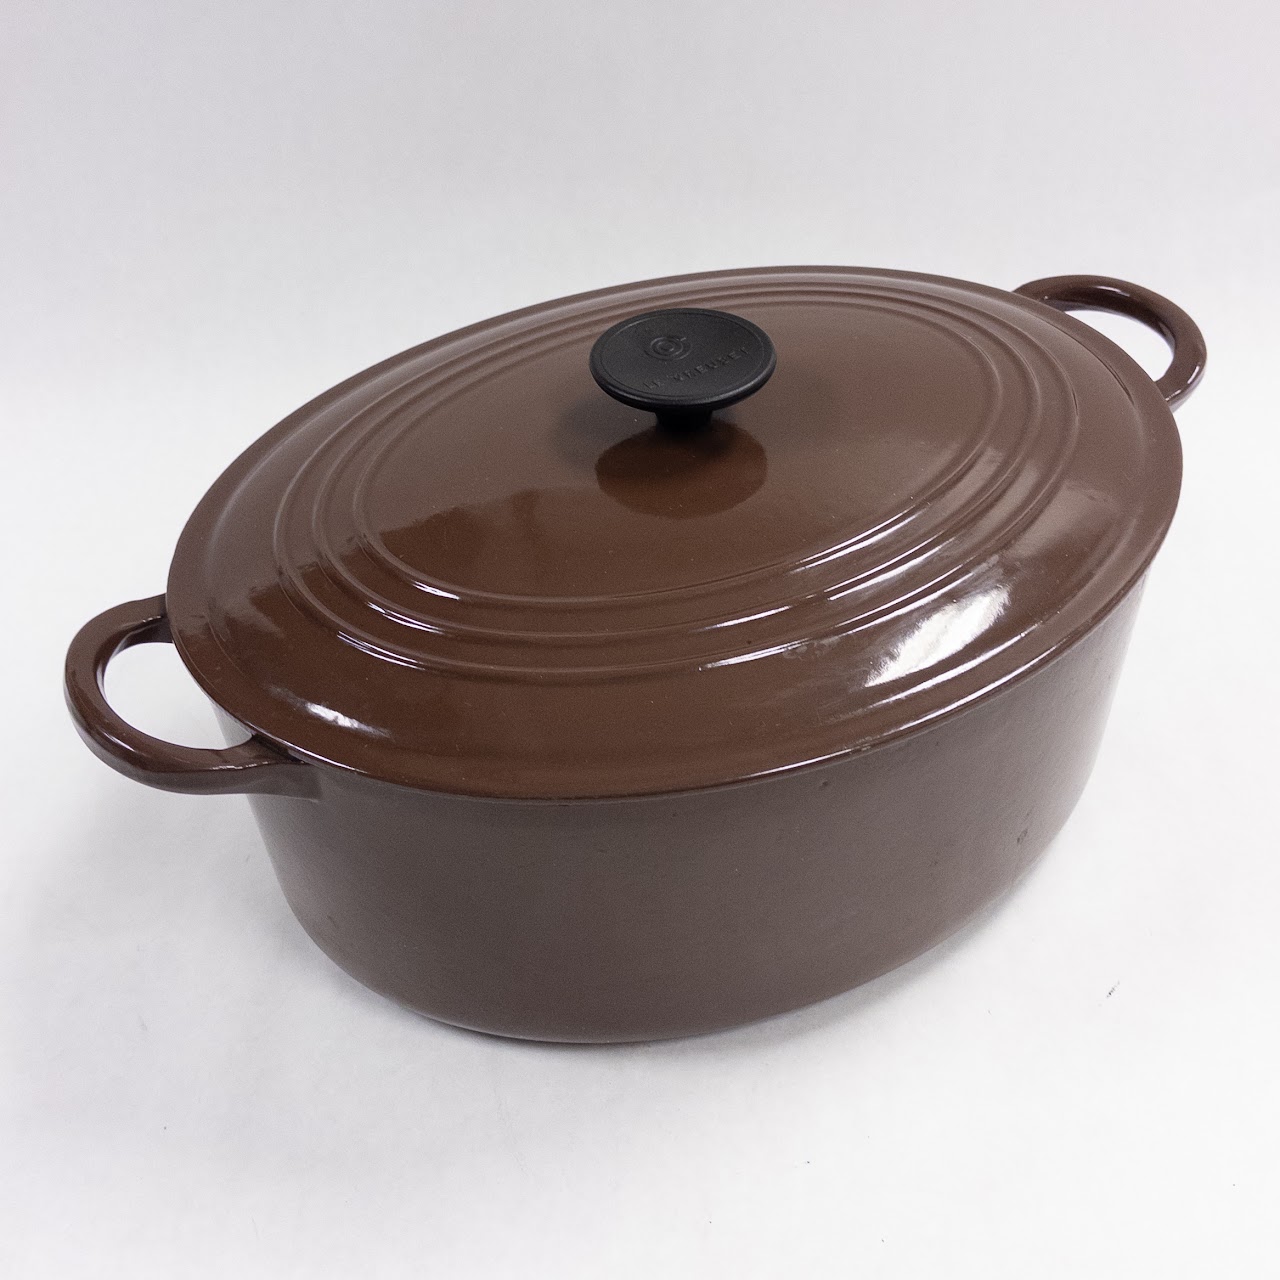 Vintage LE CREUSET “D” Brown Cast Iron Dutch Oven Pot W/ Lid - 3.5 Qt